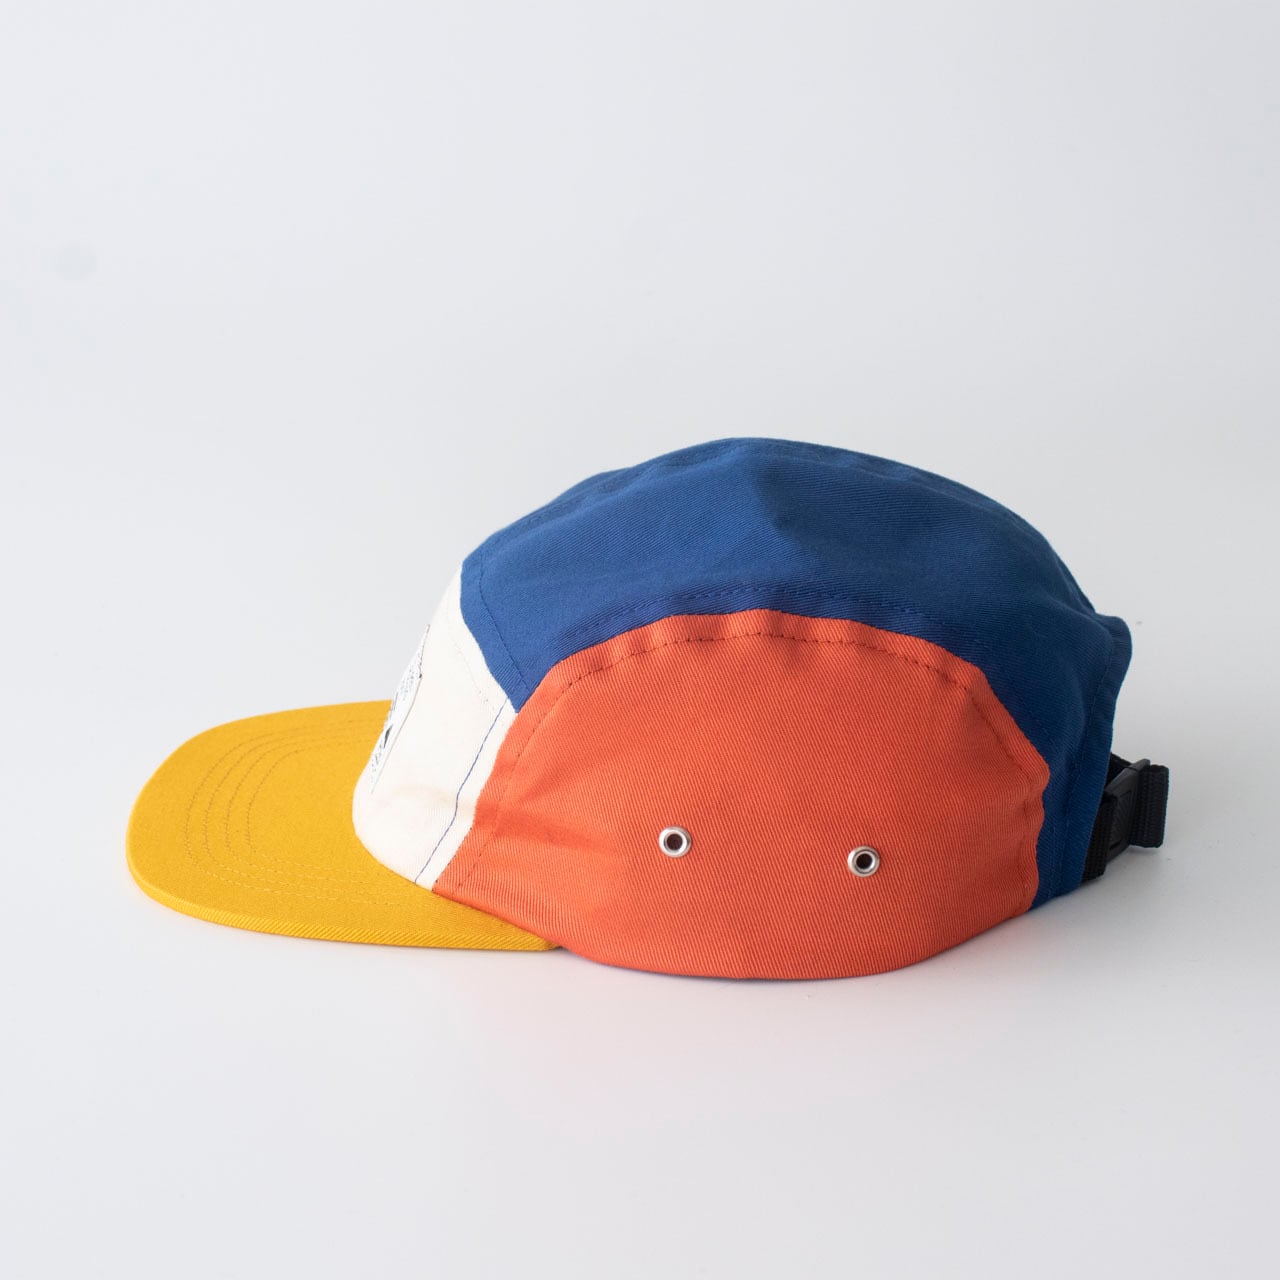 ジェットキャップ【マルチイエロー】ブランド 子供帽子 赤ちゃん帽子